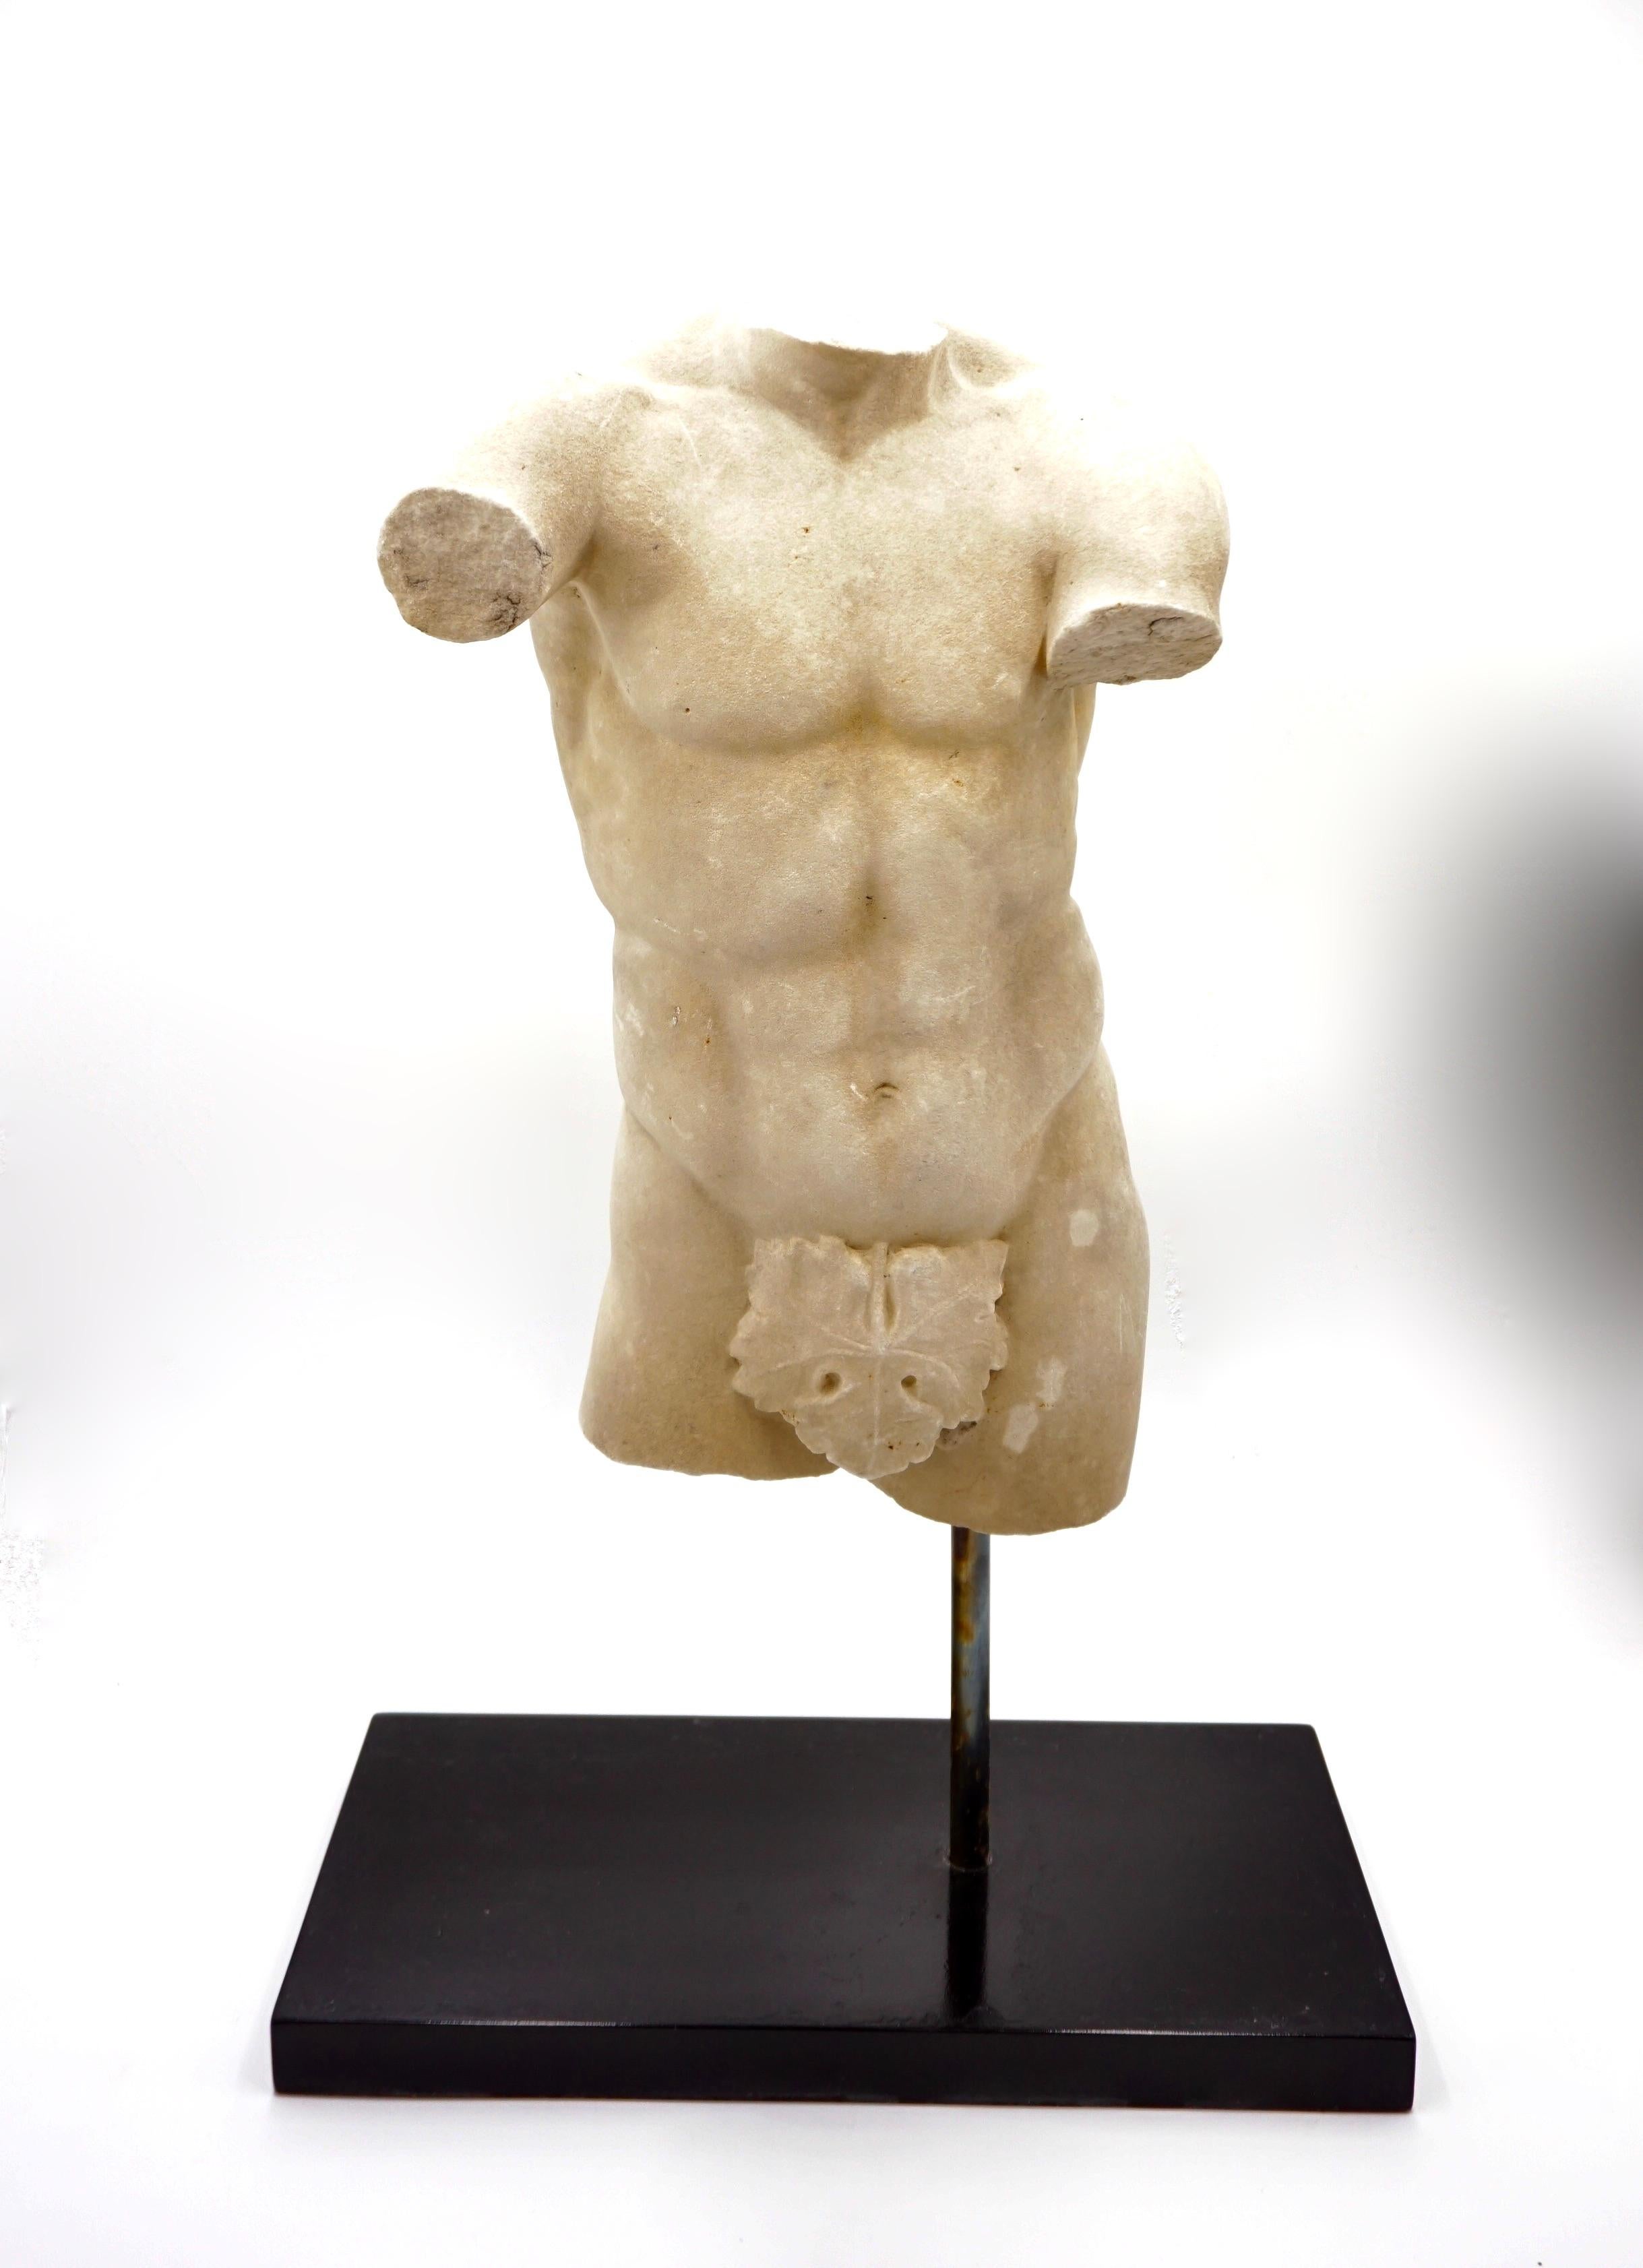 Torse masculin ancien en marbre, vers 1850
Une copie de la statue romaine en marbre Apoxyomenus au Musei Vaticani à Rome (I sec d.c.) copie d'une statue grecque d'athlète en bronze Apoxyomenos chef-d'œuvre de Lisippo vers 320 a.c. 
Comme il est